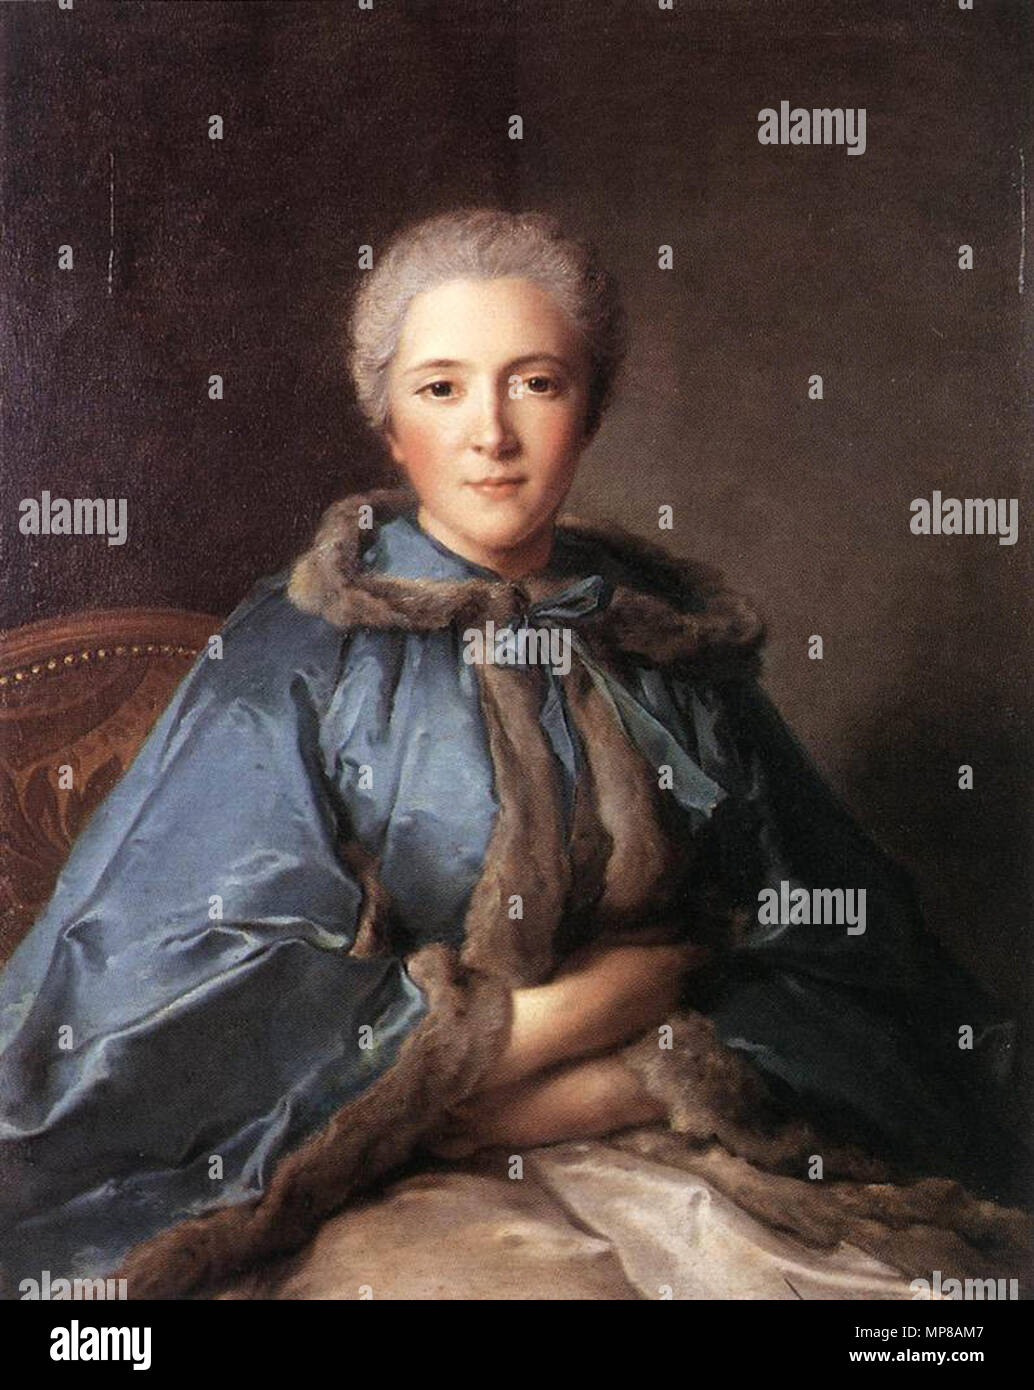 715 Jean-Marc Nattier, The Comtesse de Tillières (1750; before retouching) - 01 Stock Photo